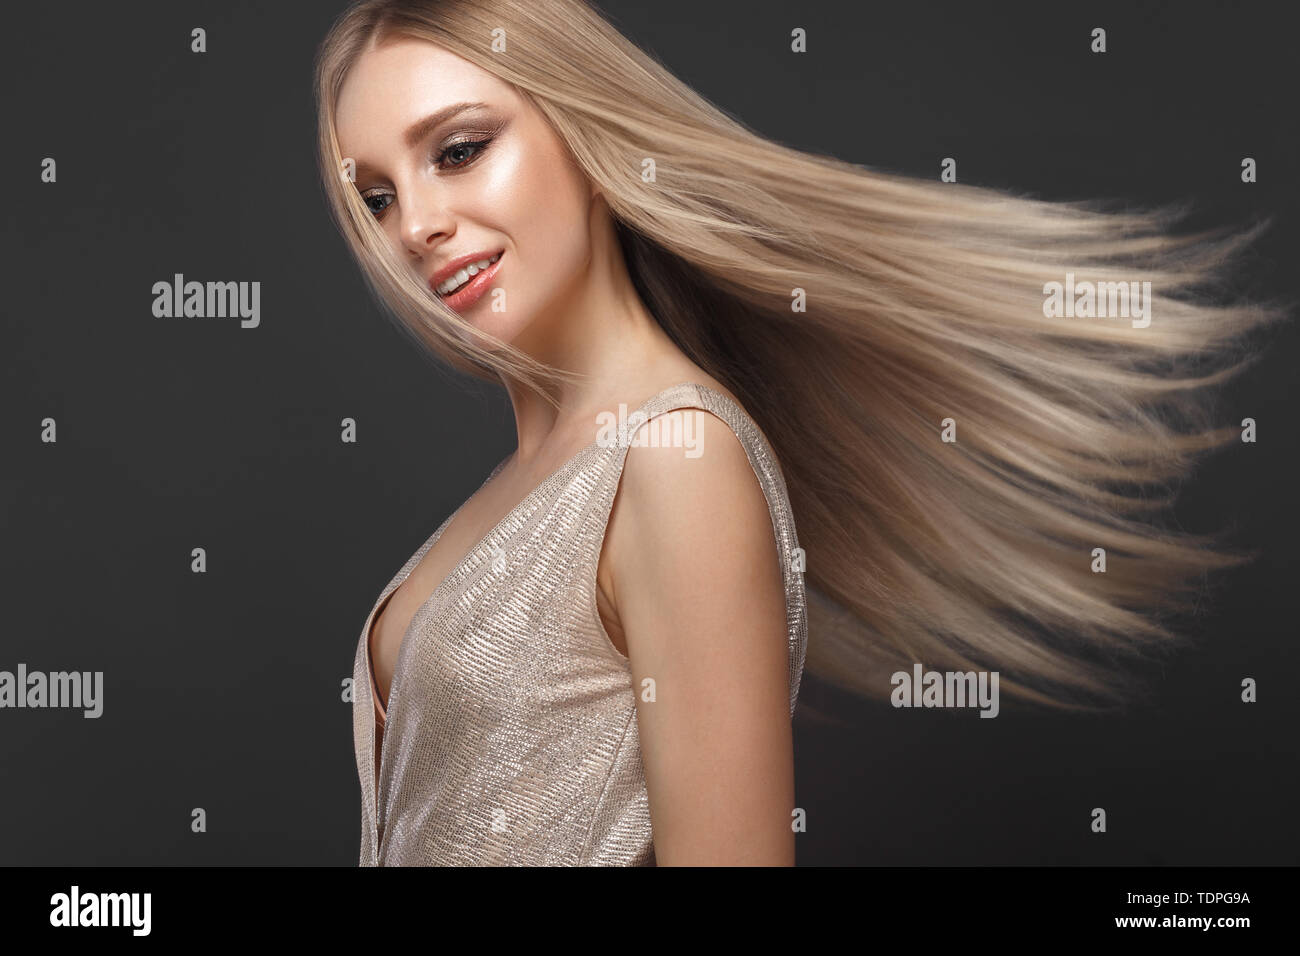 Schöne blondes Mädchen in bewegen perfekt glattes Haar mit klassischen Make-up. Beauty Gesicht. Stockfoto